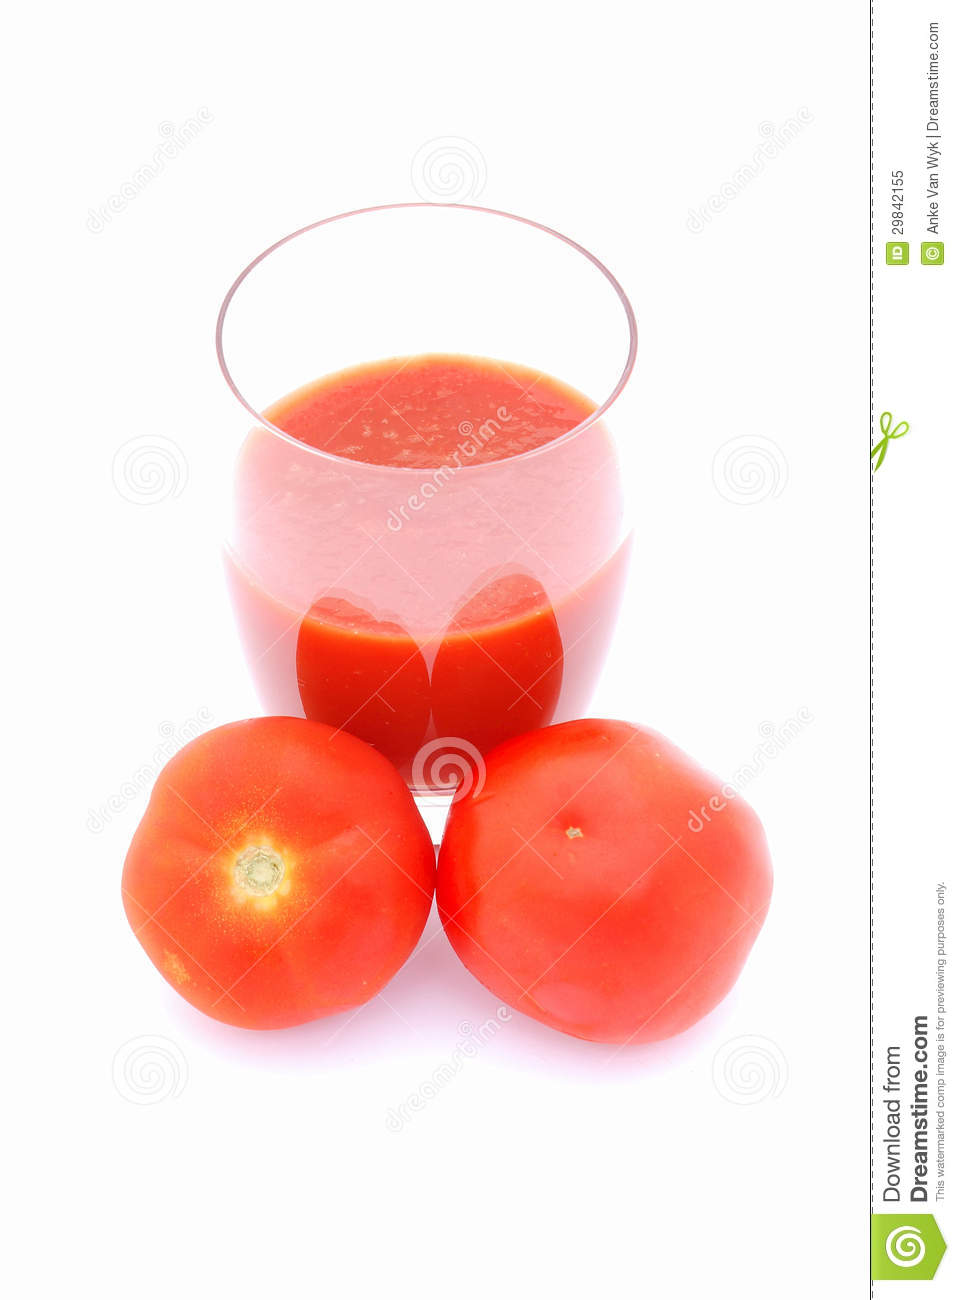 Tomato Juice Royalty Free Stock Photo   Image  29842155